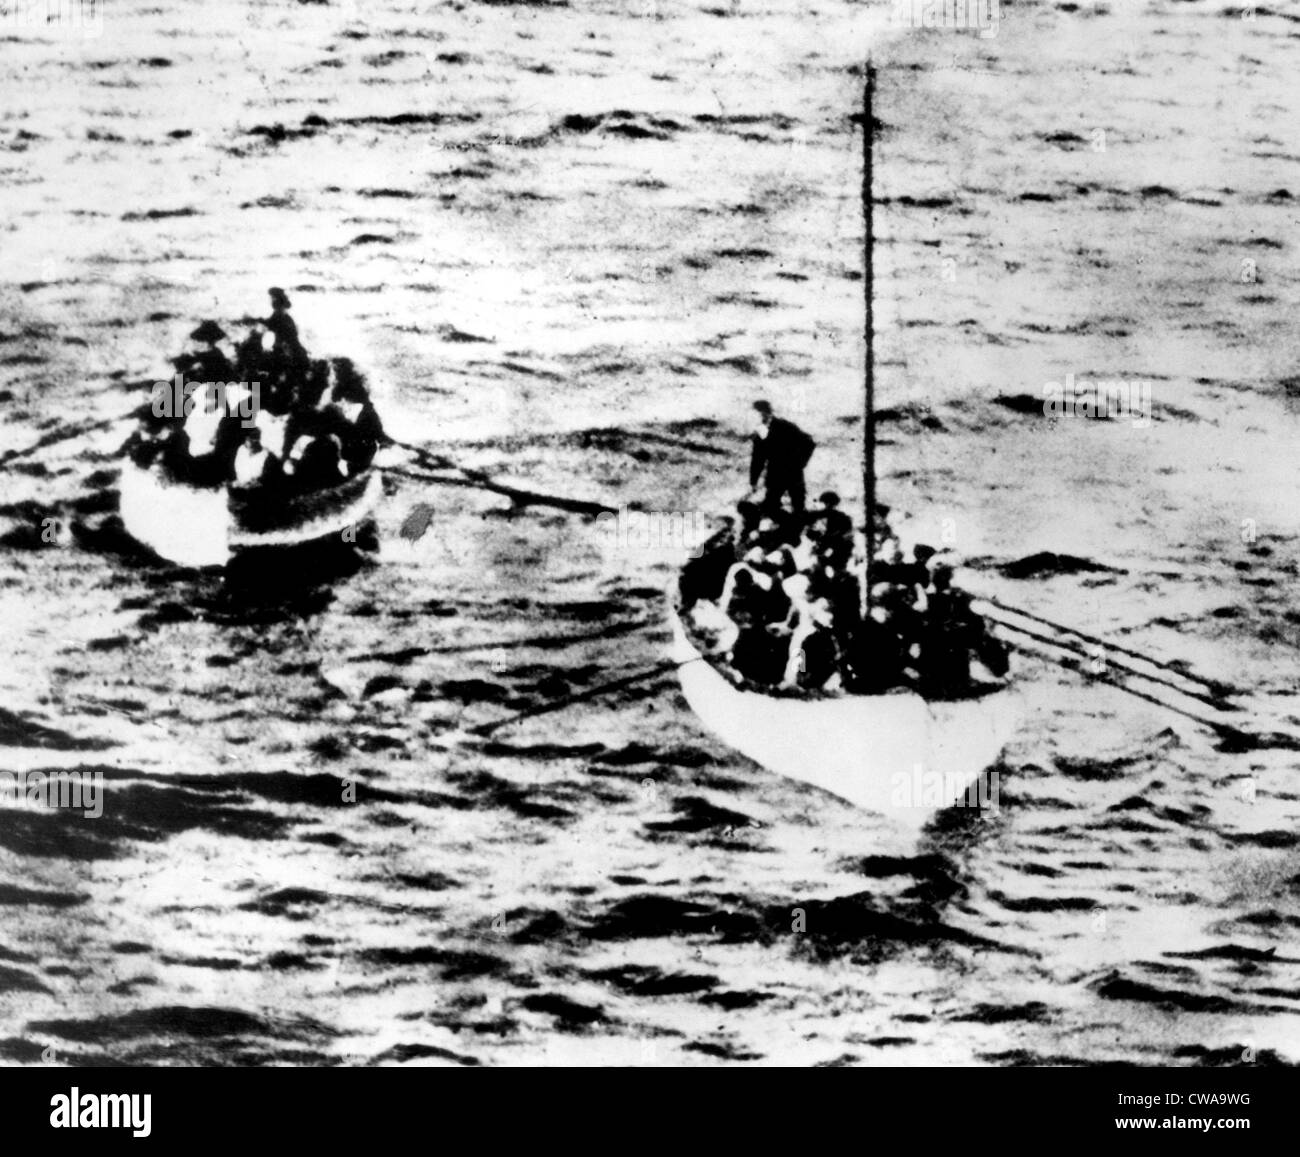 Due le imbarcazioni di salvataggio contenente superstiti del RMS Titanic naufragio, 1912.. La cortesia: CSU Archivi / Everett Collection Foto Stock